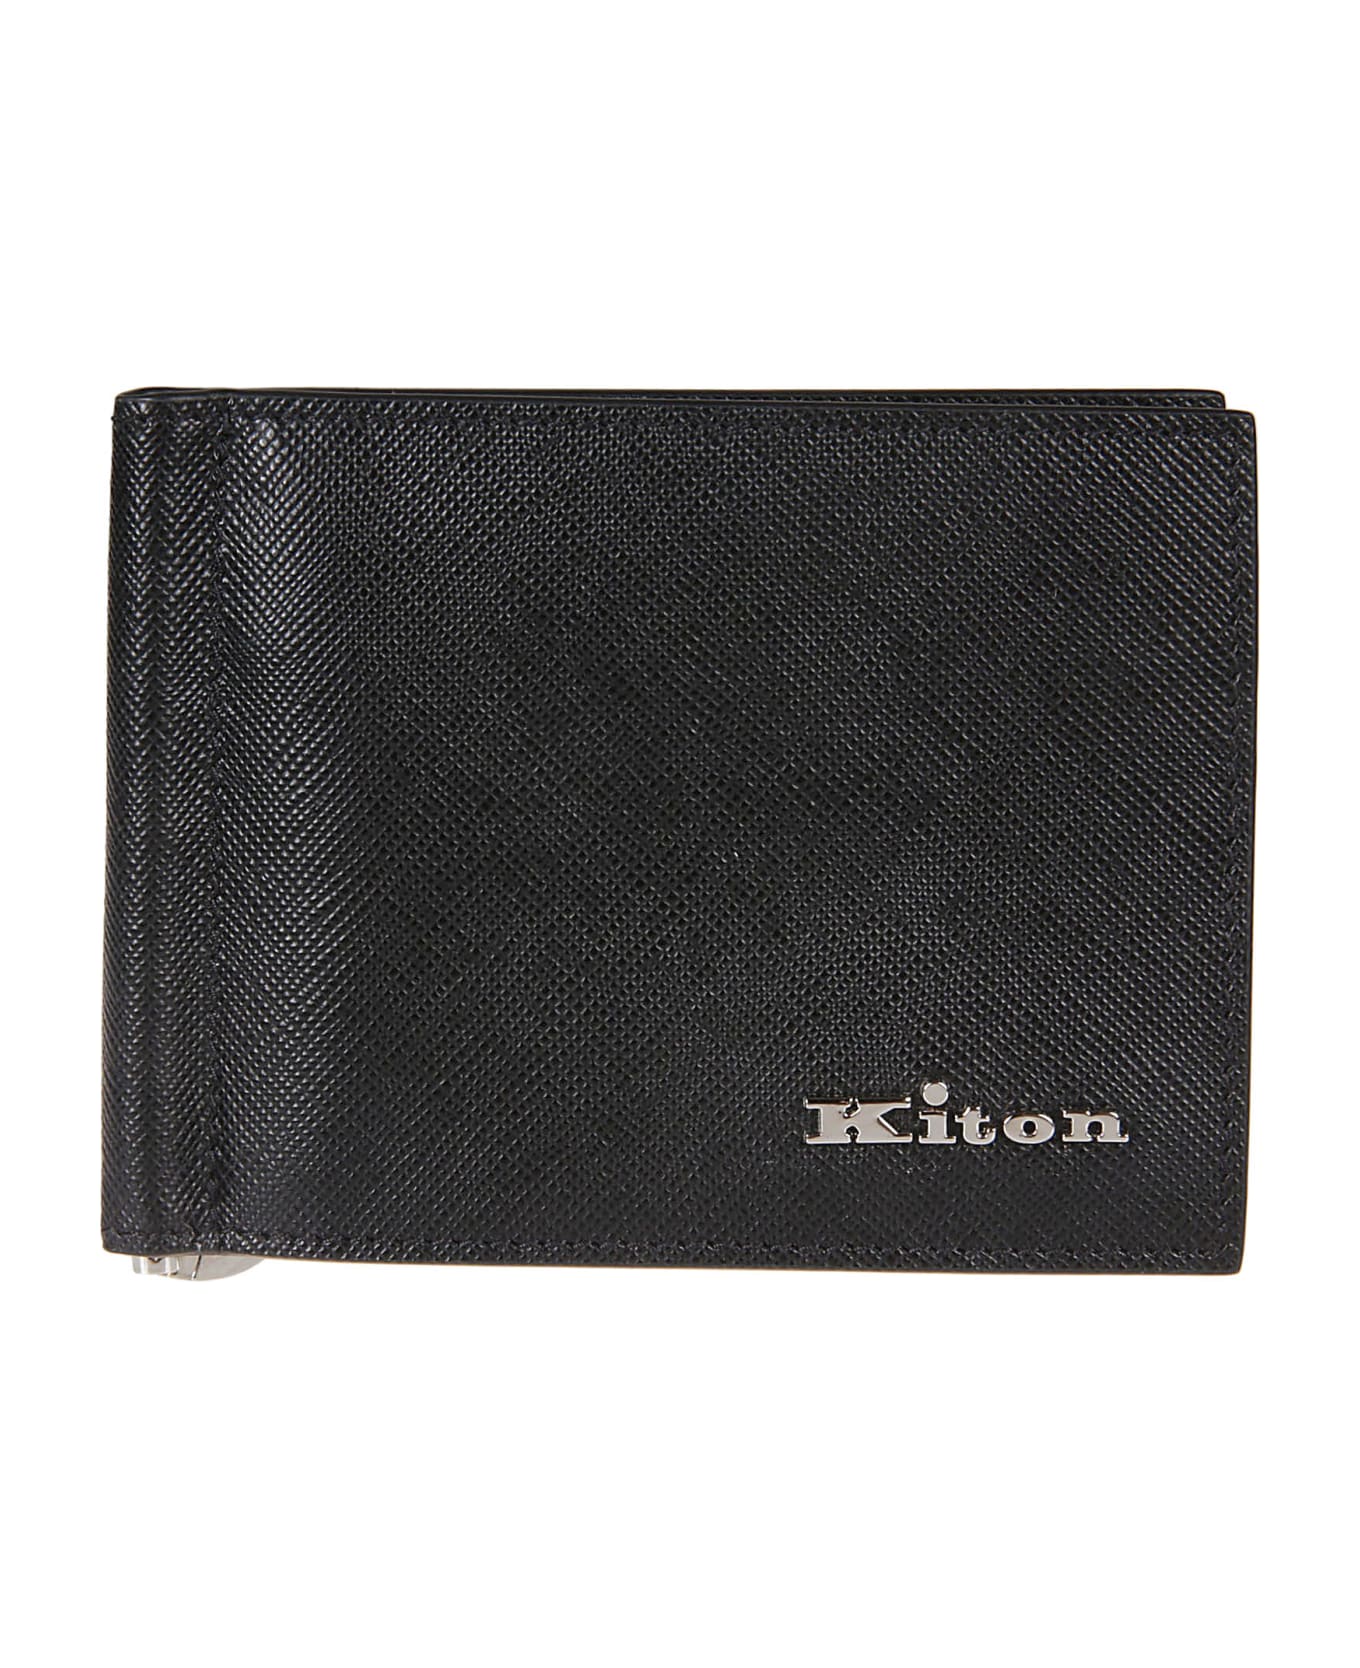 Kiton A013 Wallet - Nero